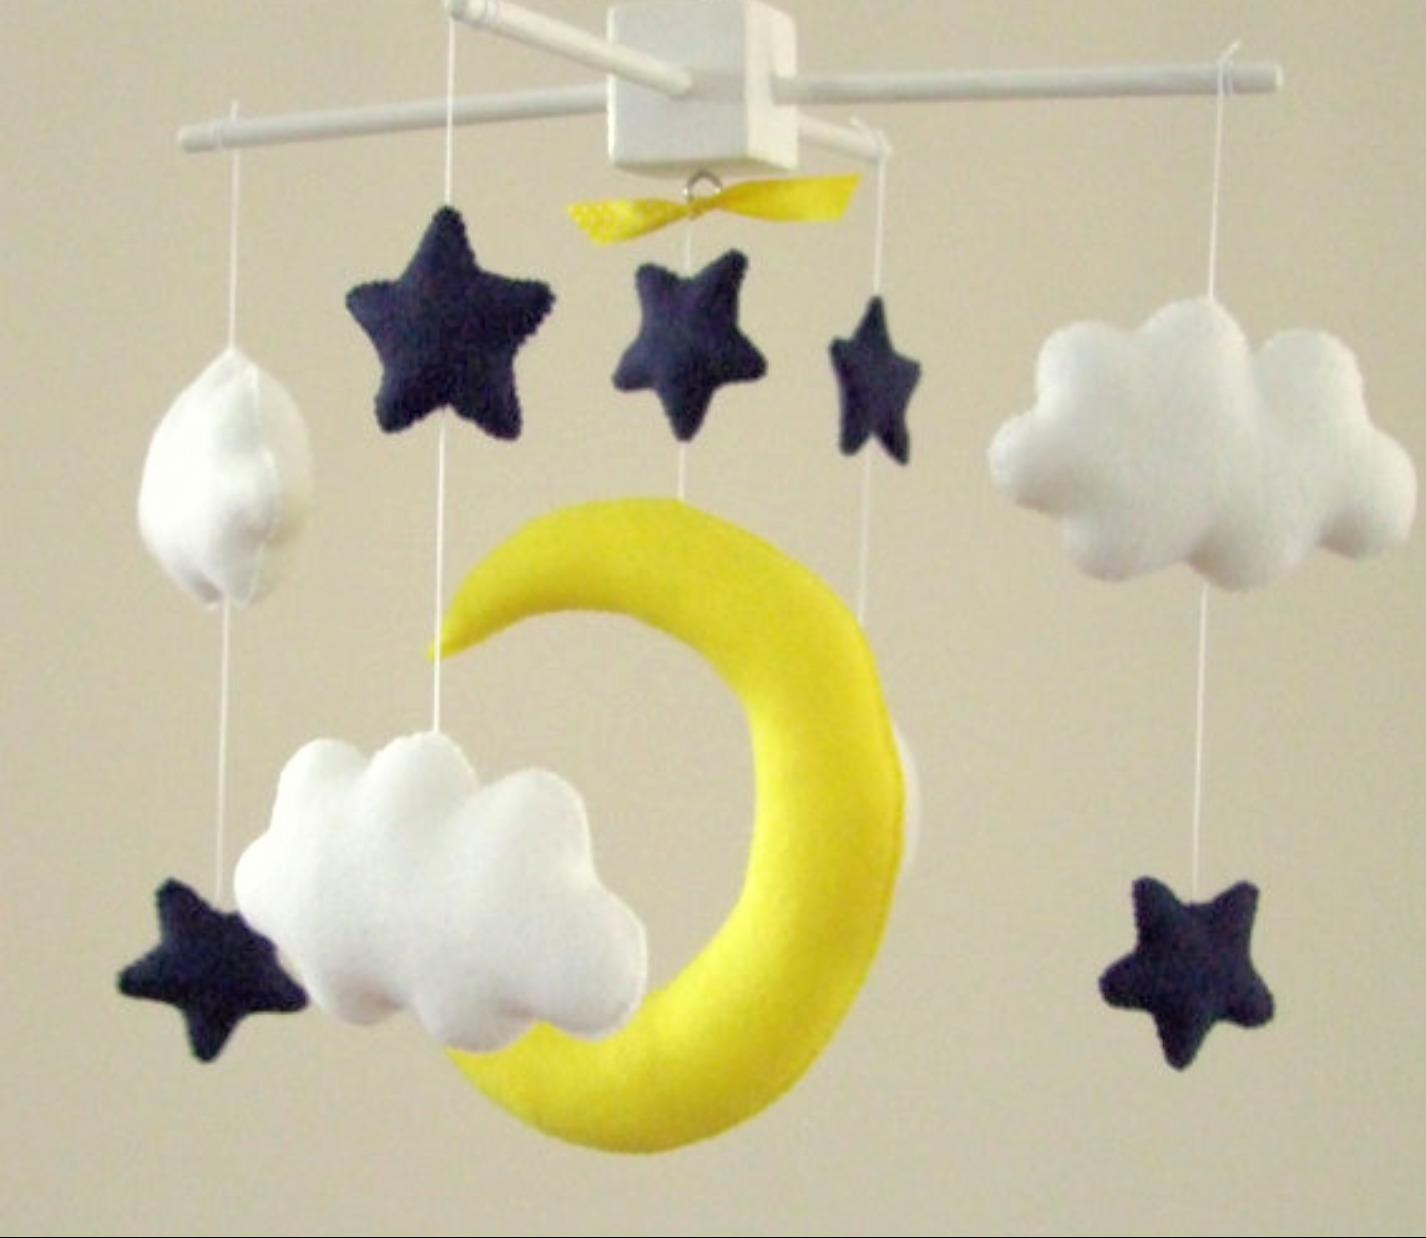 Baby Nursery Plafond Mobile Party Décoration Nuages Lune Étoiles